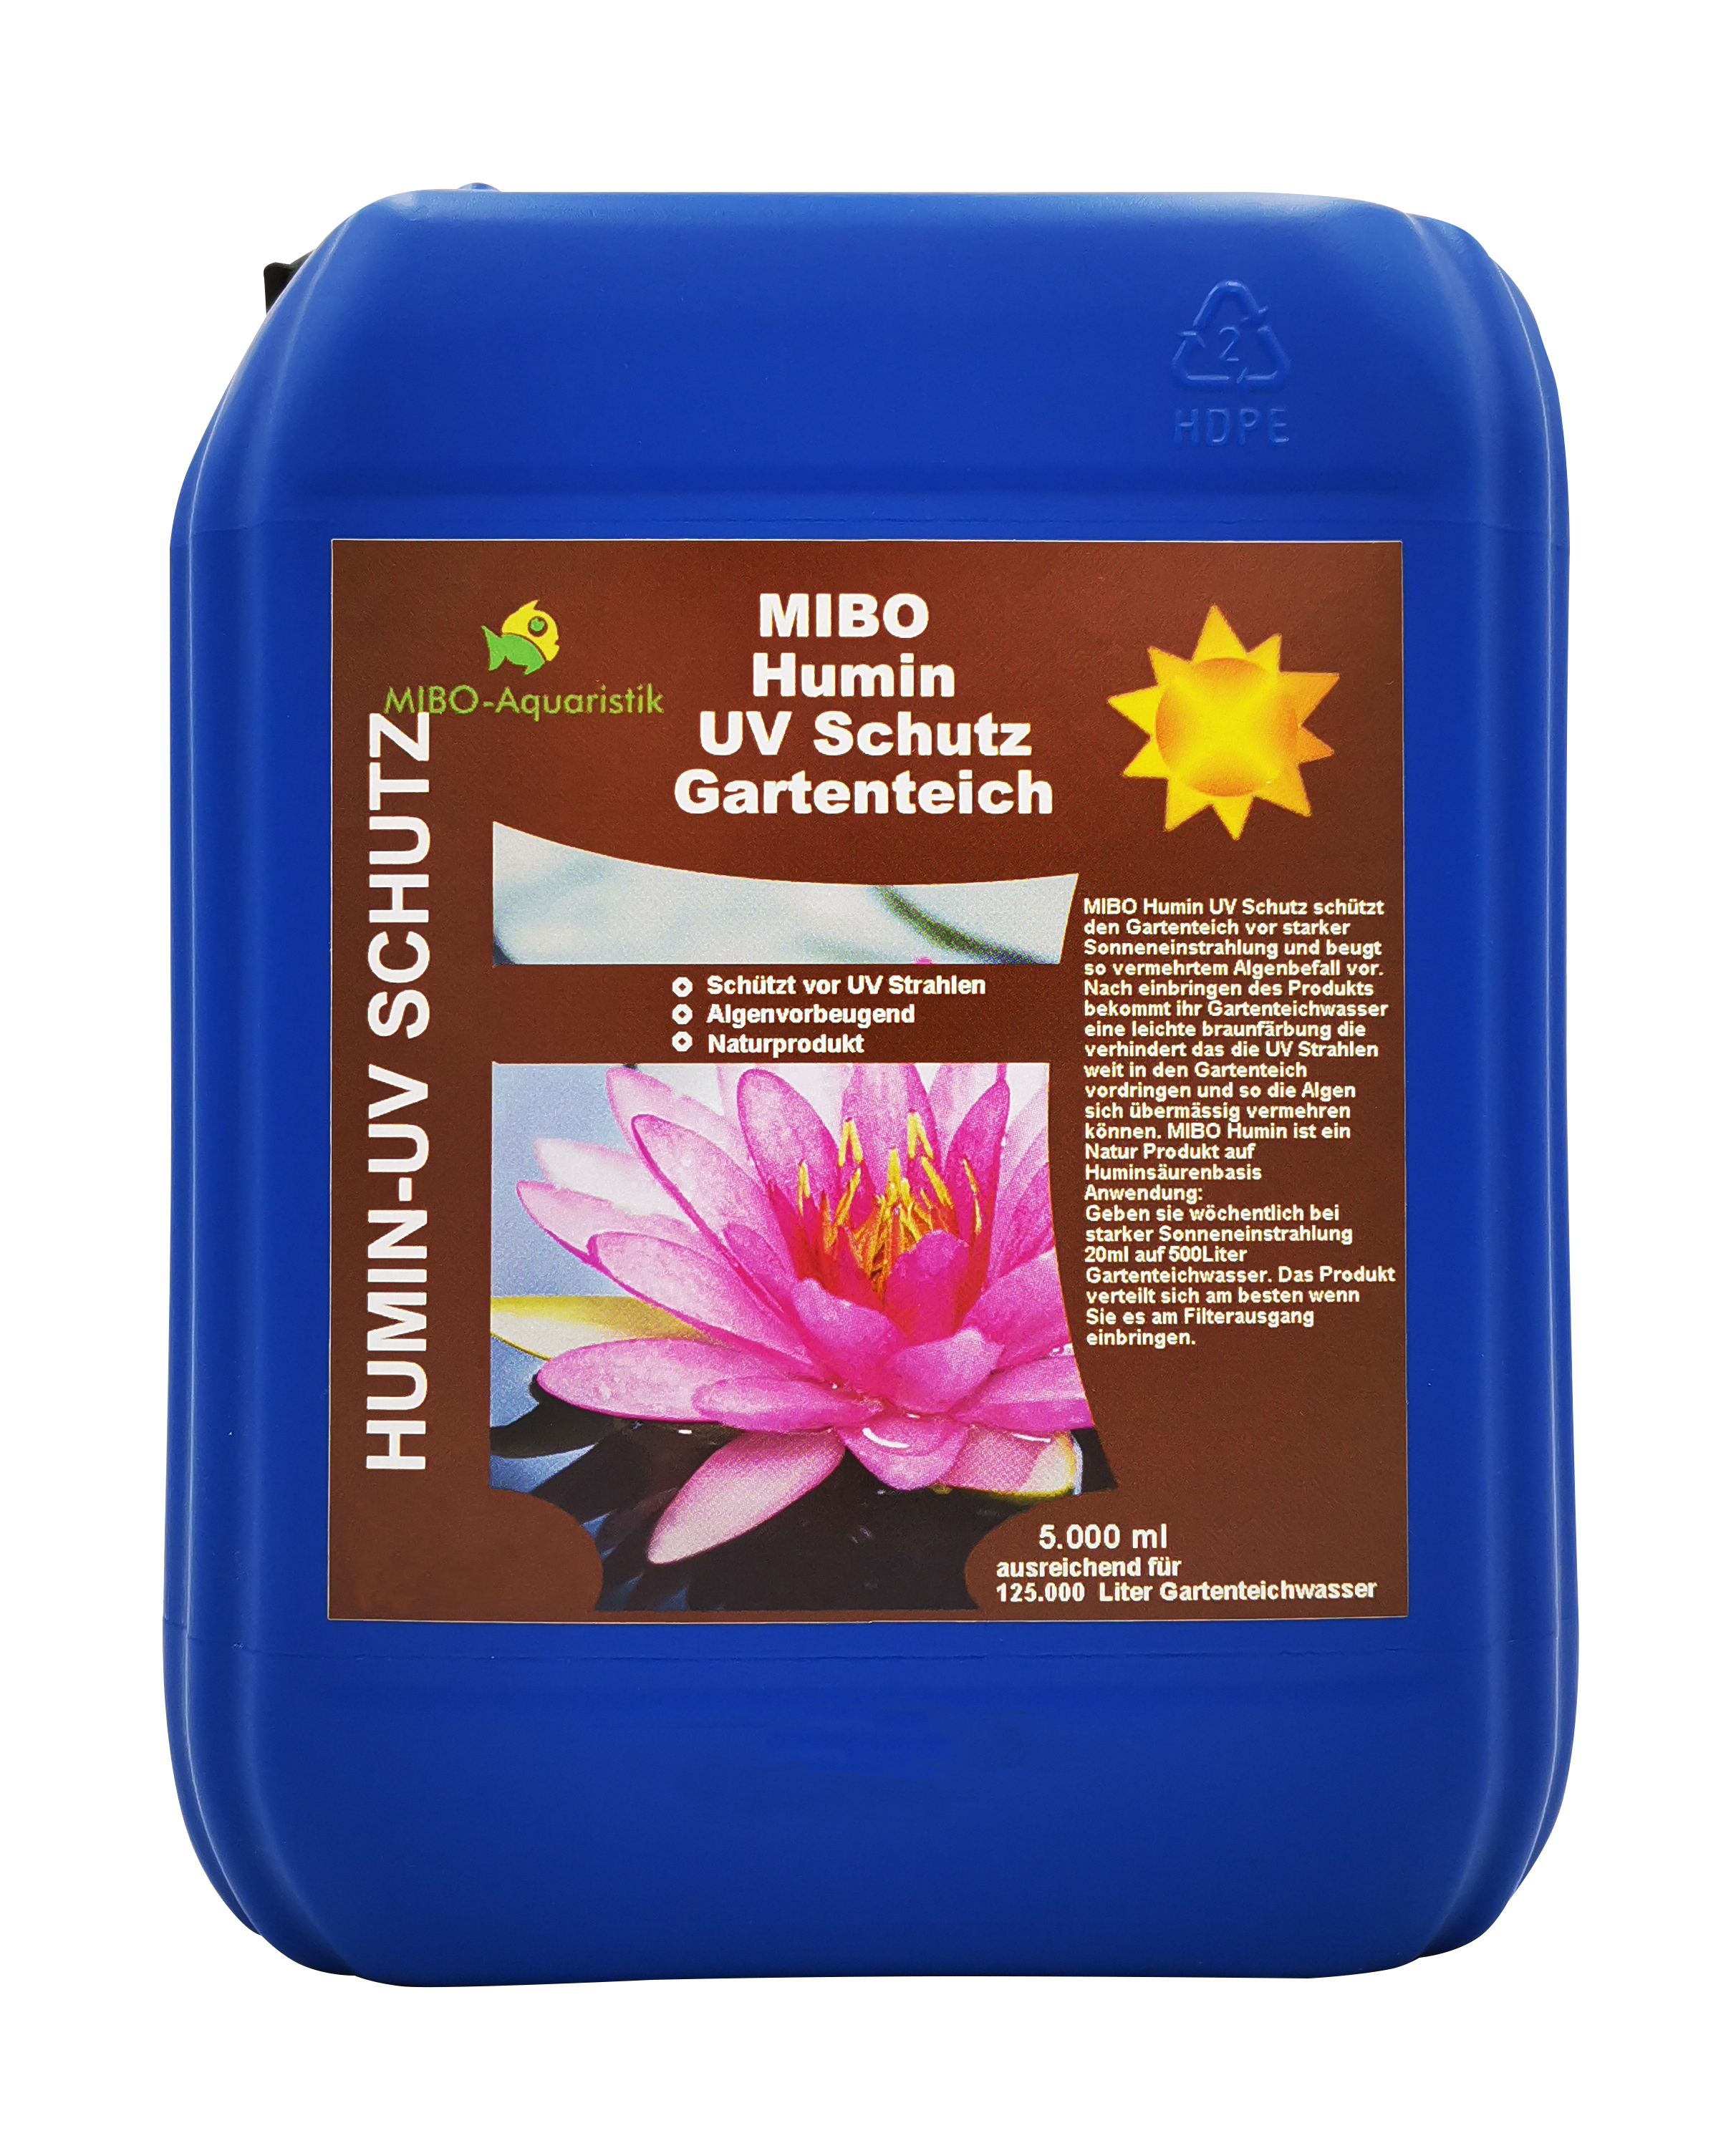 MIBO Humin Gartenteich UV Schutz 5 Liter / 5000 ml